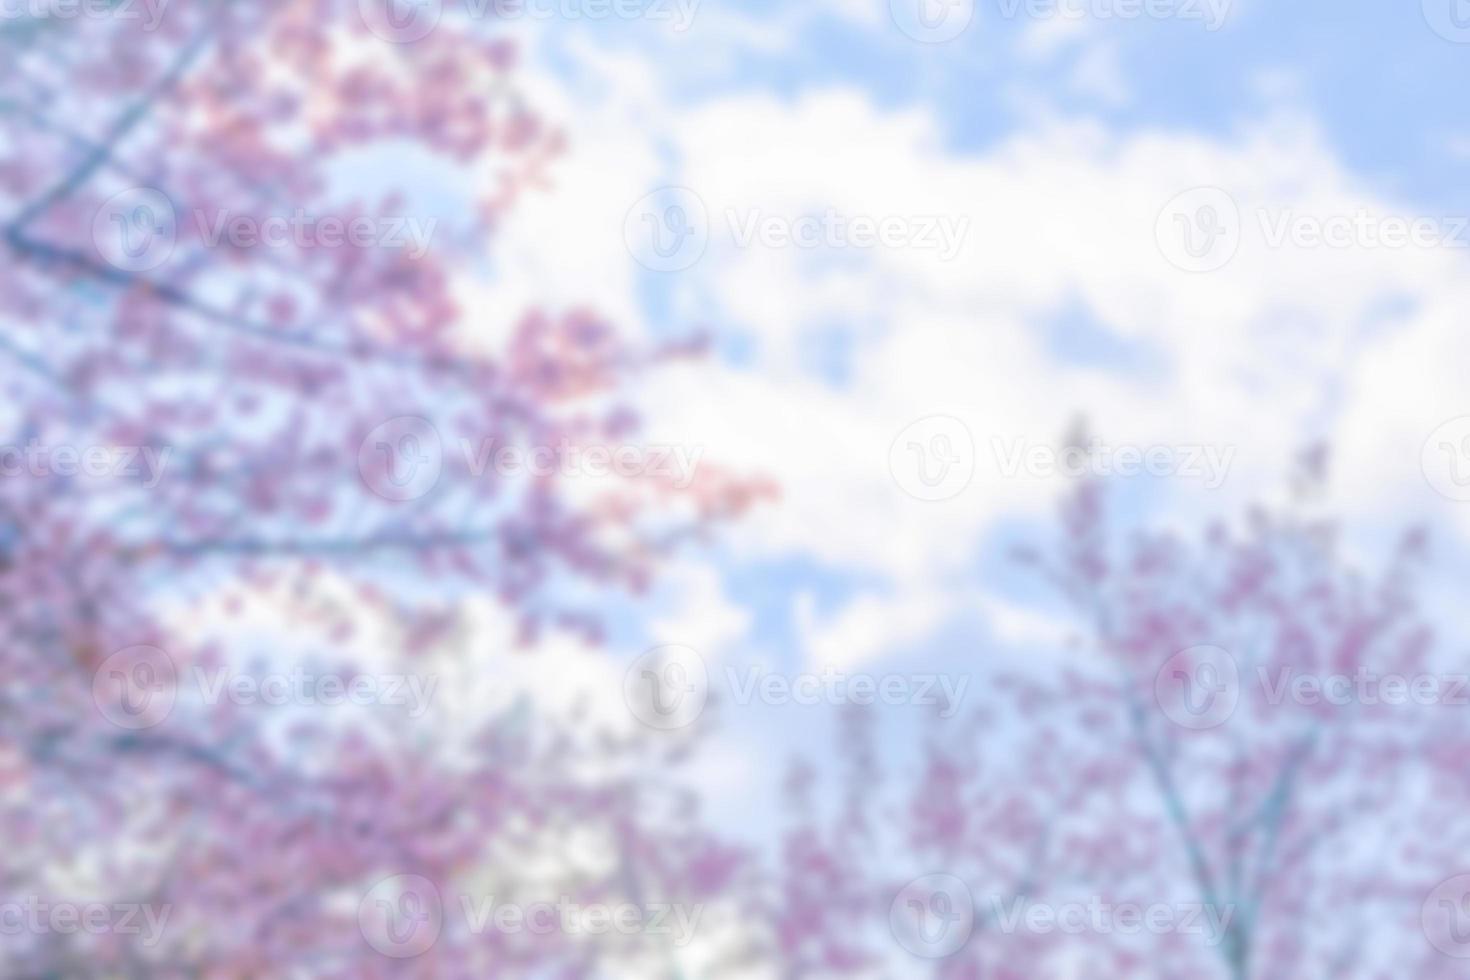 cerezo salvaje del himalaya borroso o prenus cerasoides, llame al árbol nang phaya suar klong la flor rosa florece en todo el árbol parece un sakura, tailandia. foto